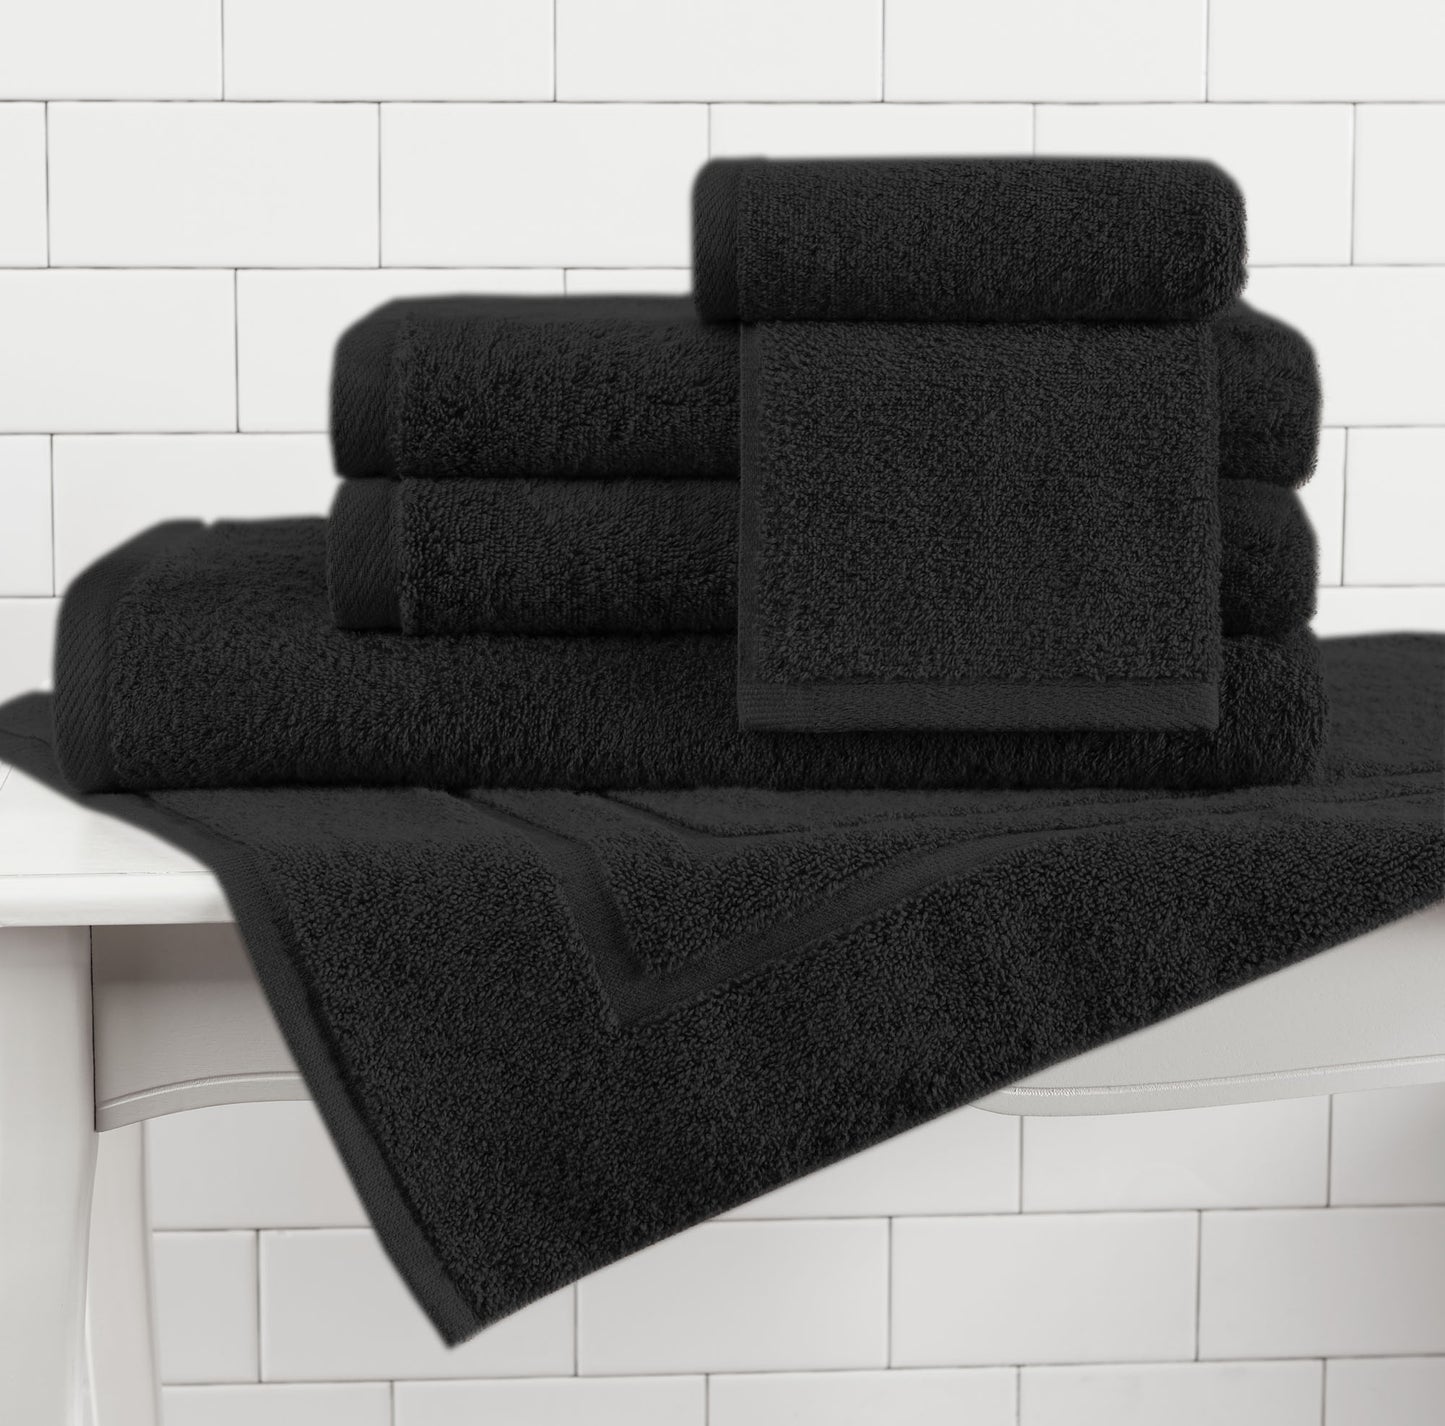 100% Cotton USA Towels 6 Piece Sets - 11 Colors! - TowelsbyGUS